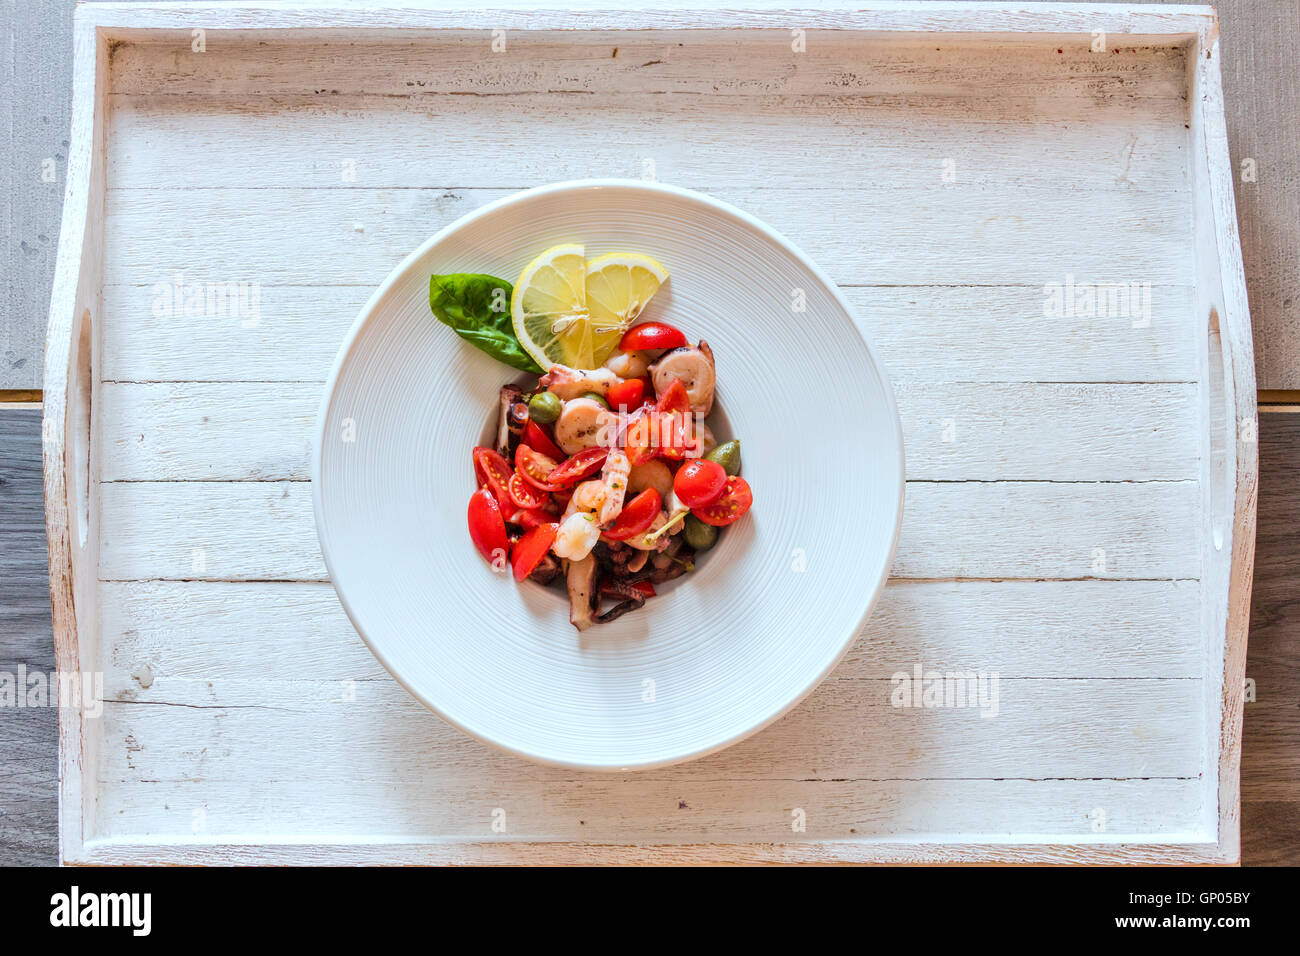 Frische Meeresfrüchte begleitet von Tomaten und Gemüse ein typisches Gericht der italienischen Küche und die Mittelmeer-Diät Stockfoto